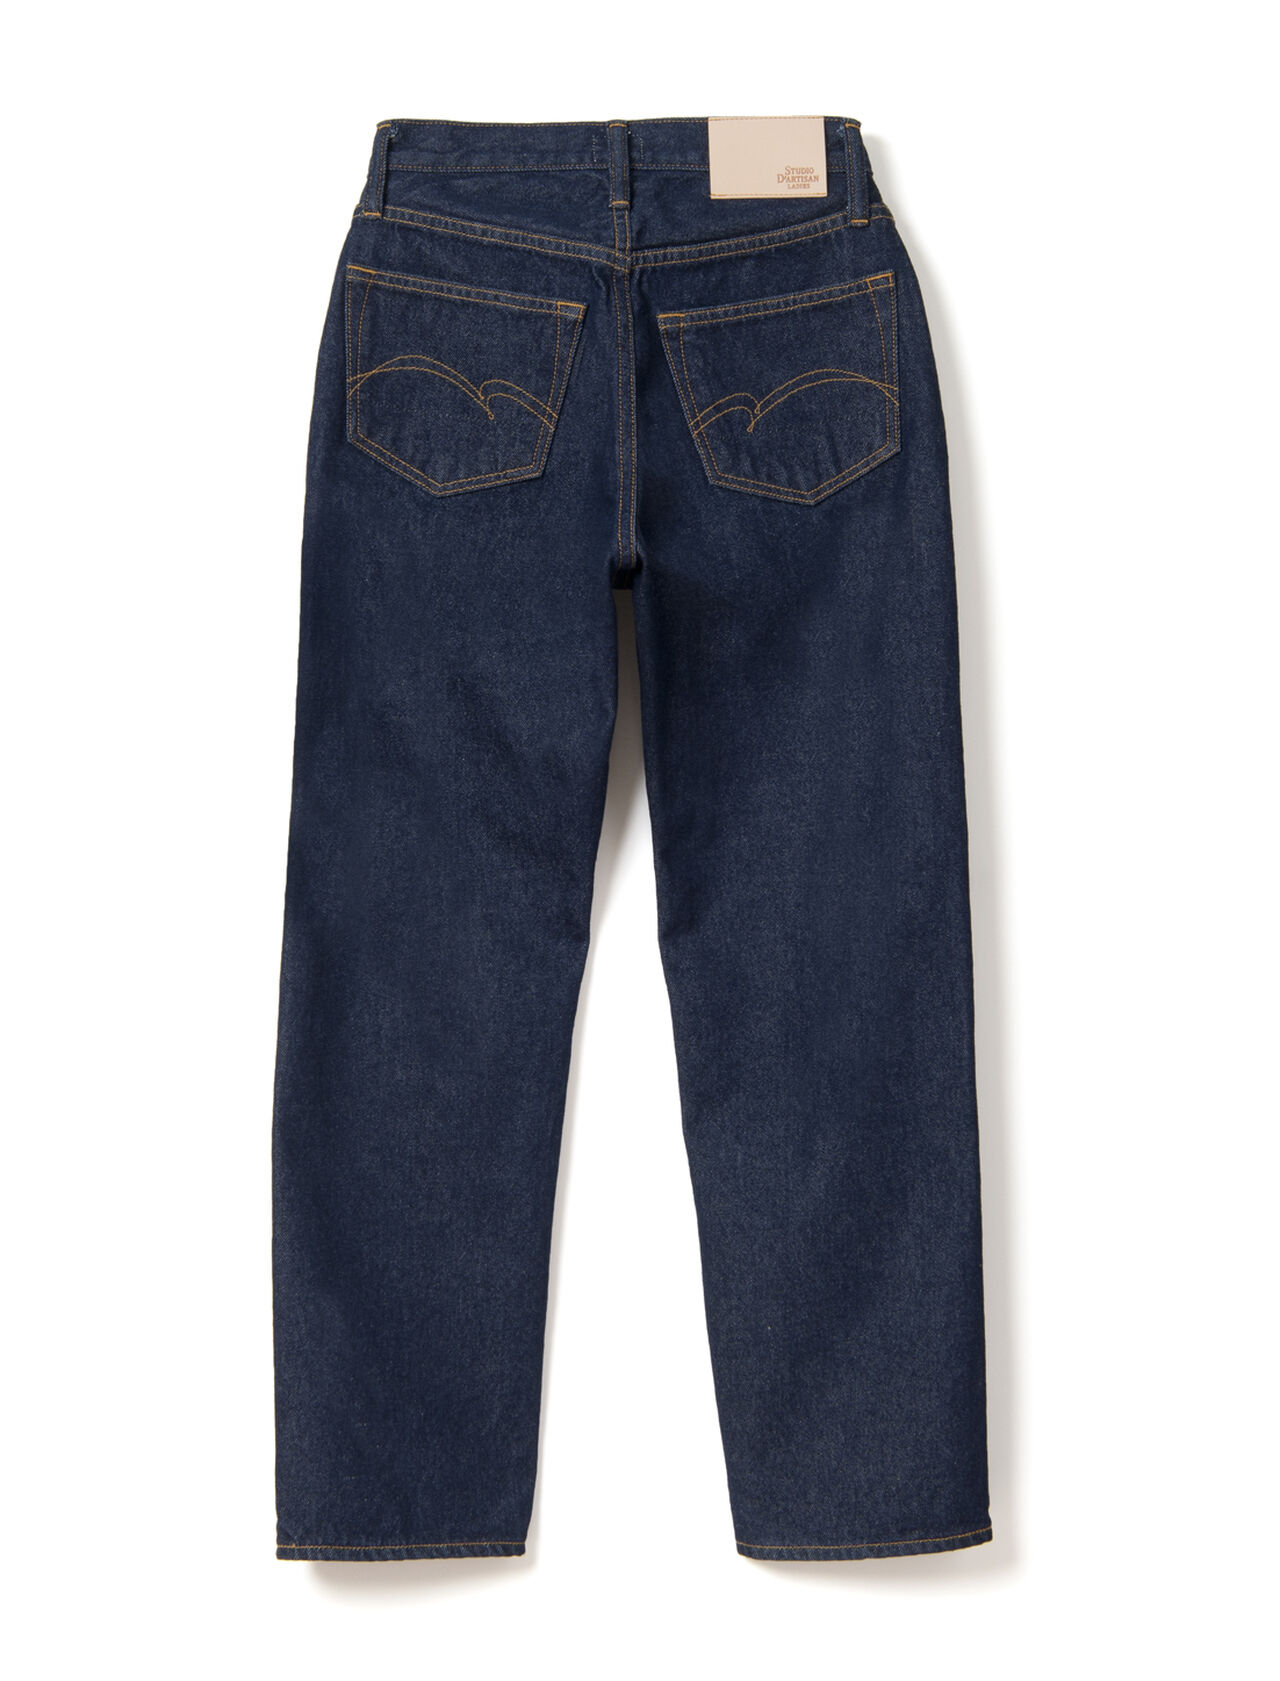 DENIMIO  SDL-1014 90s Wash Jeans